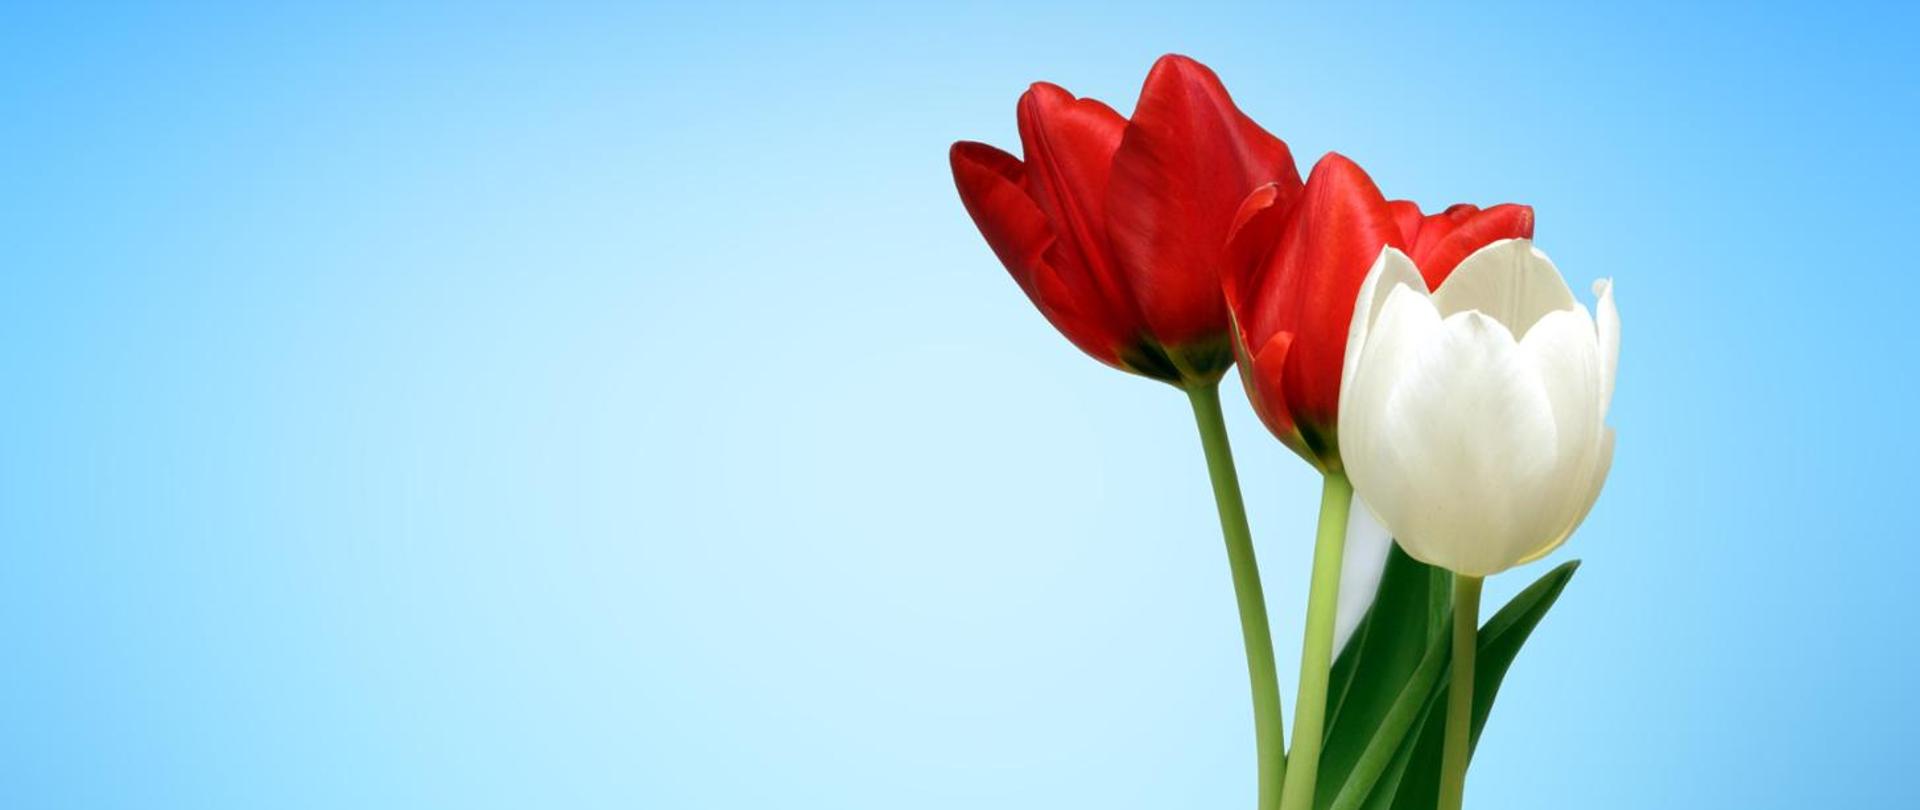 trzy tulipany, dwa czerwone, jedn biały